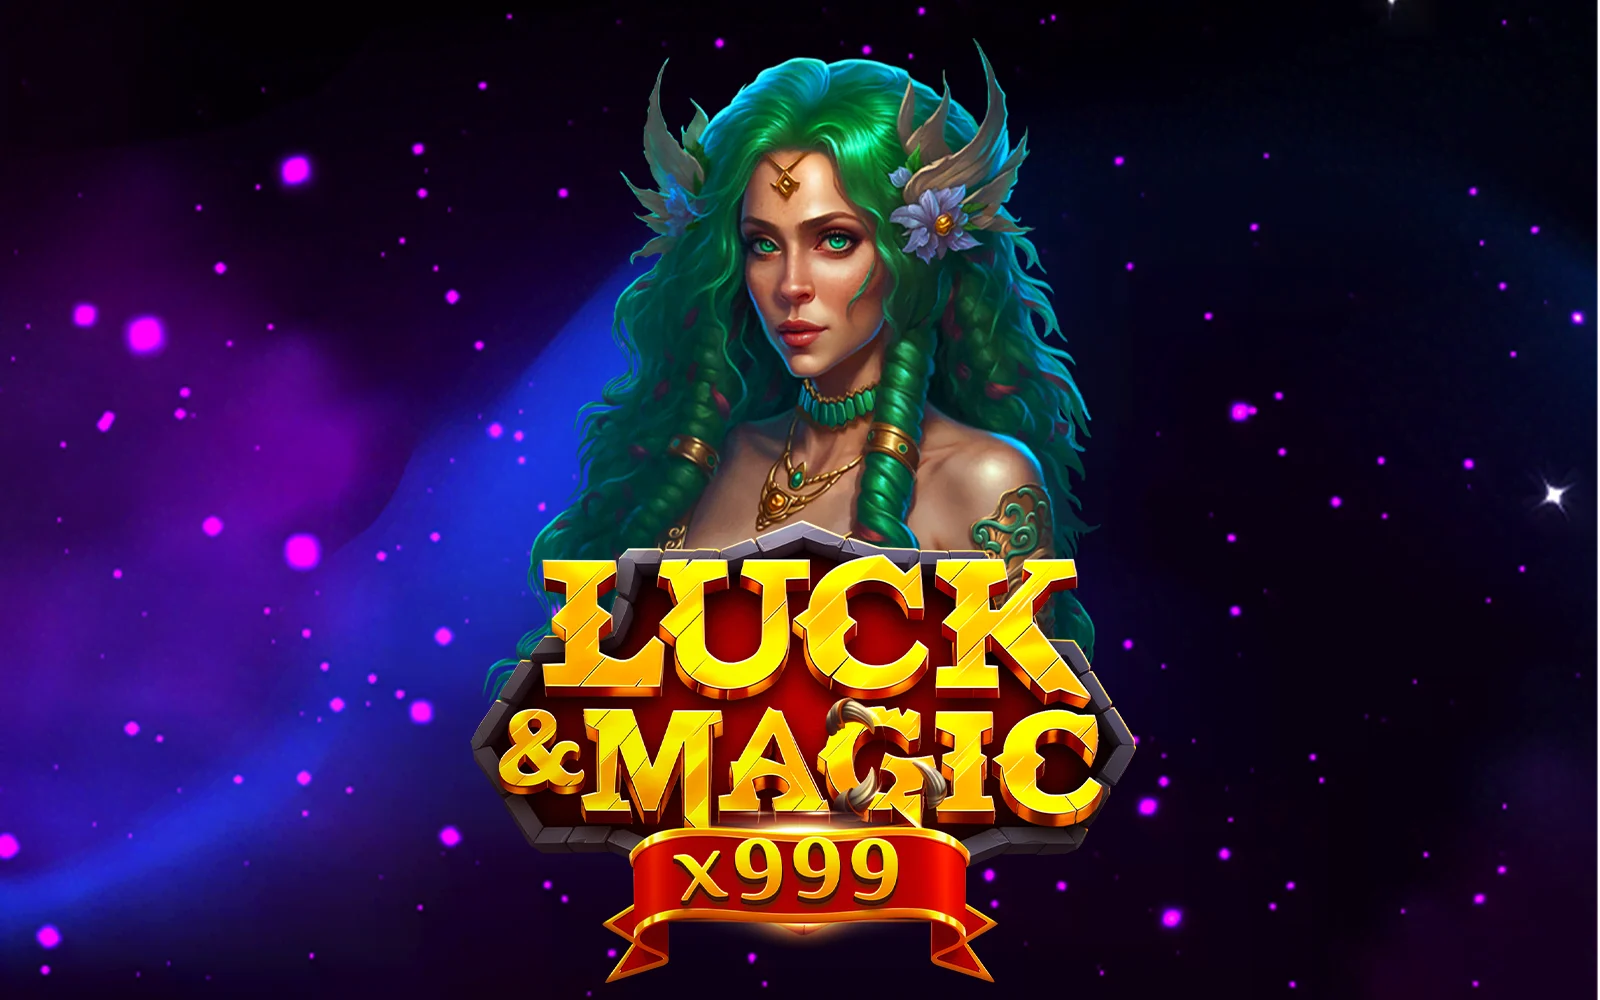 Gioca a Luck & Magic sul casino online Starcasino.be